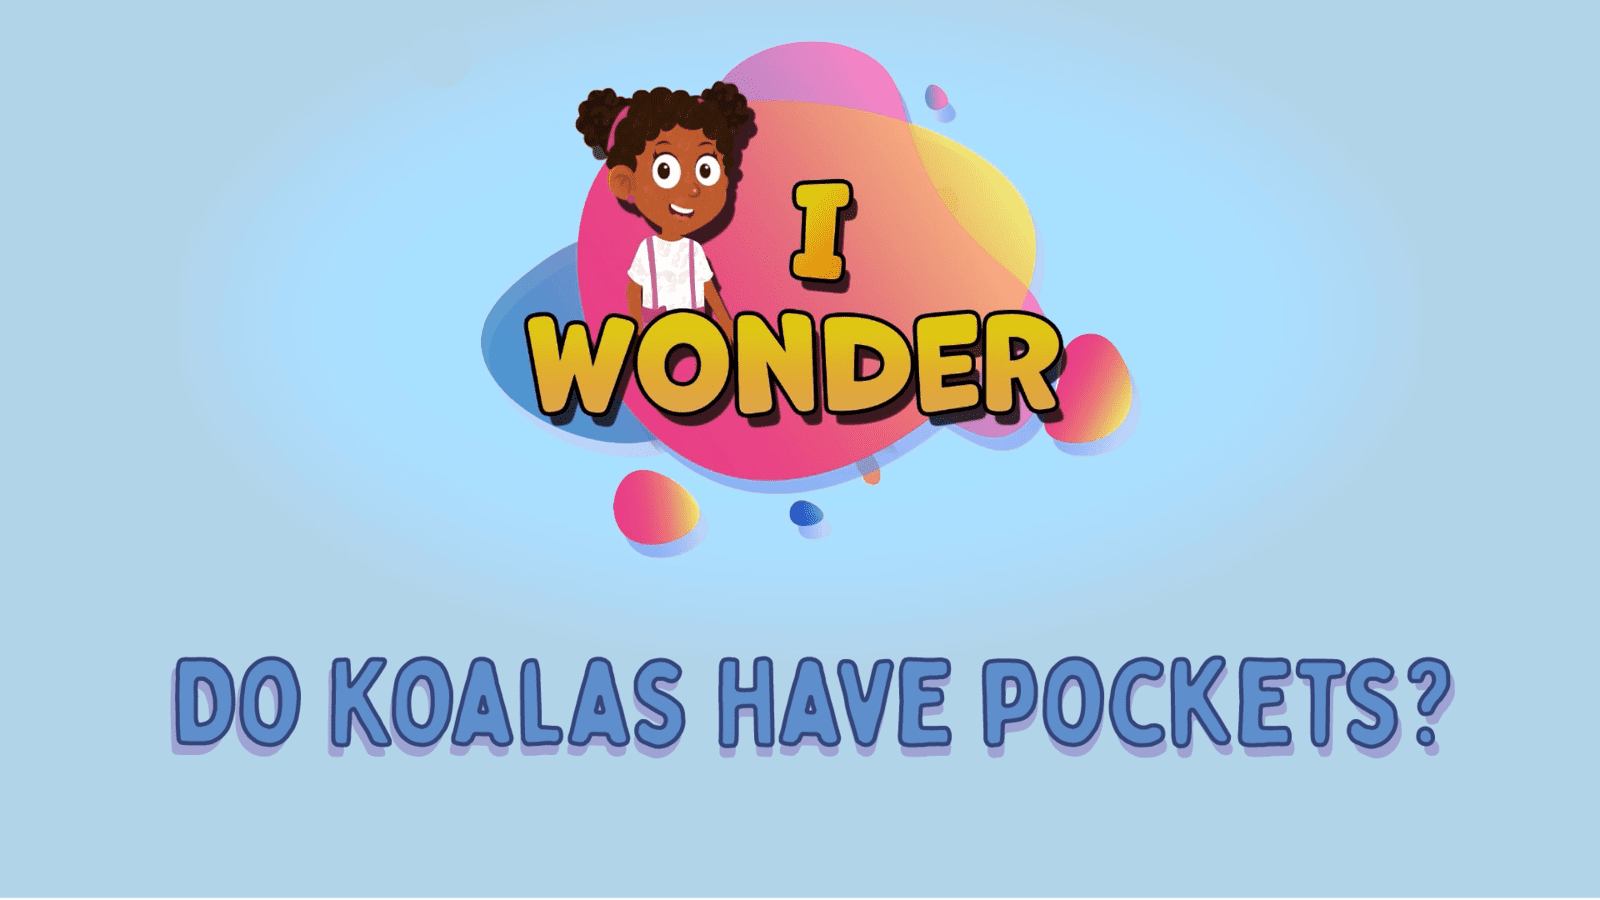 Do Koalas Have Pockets?